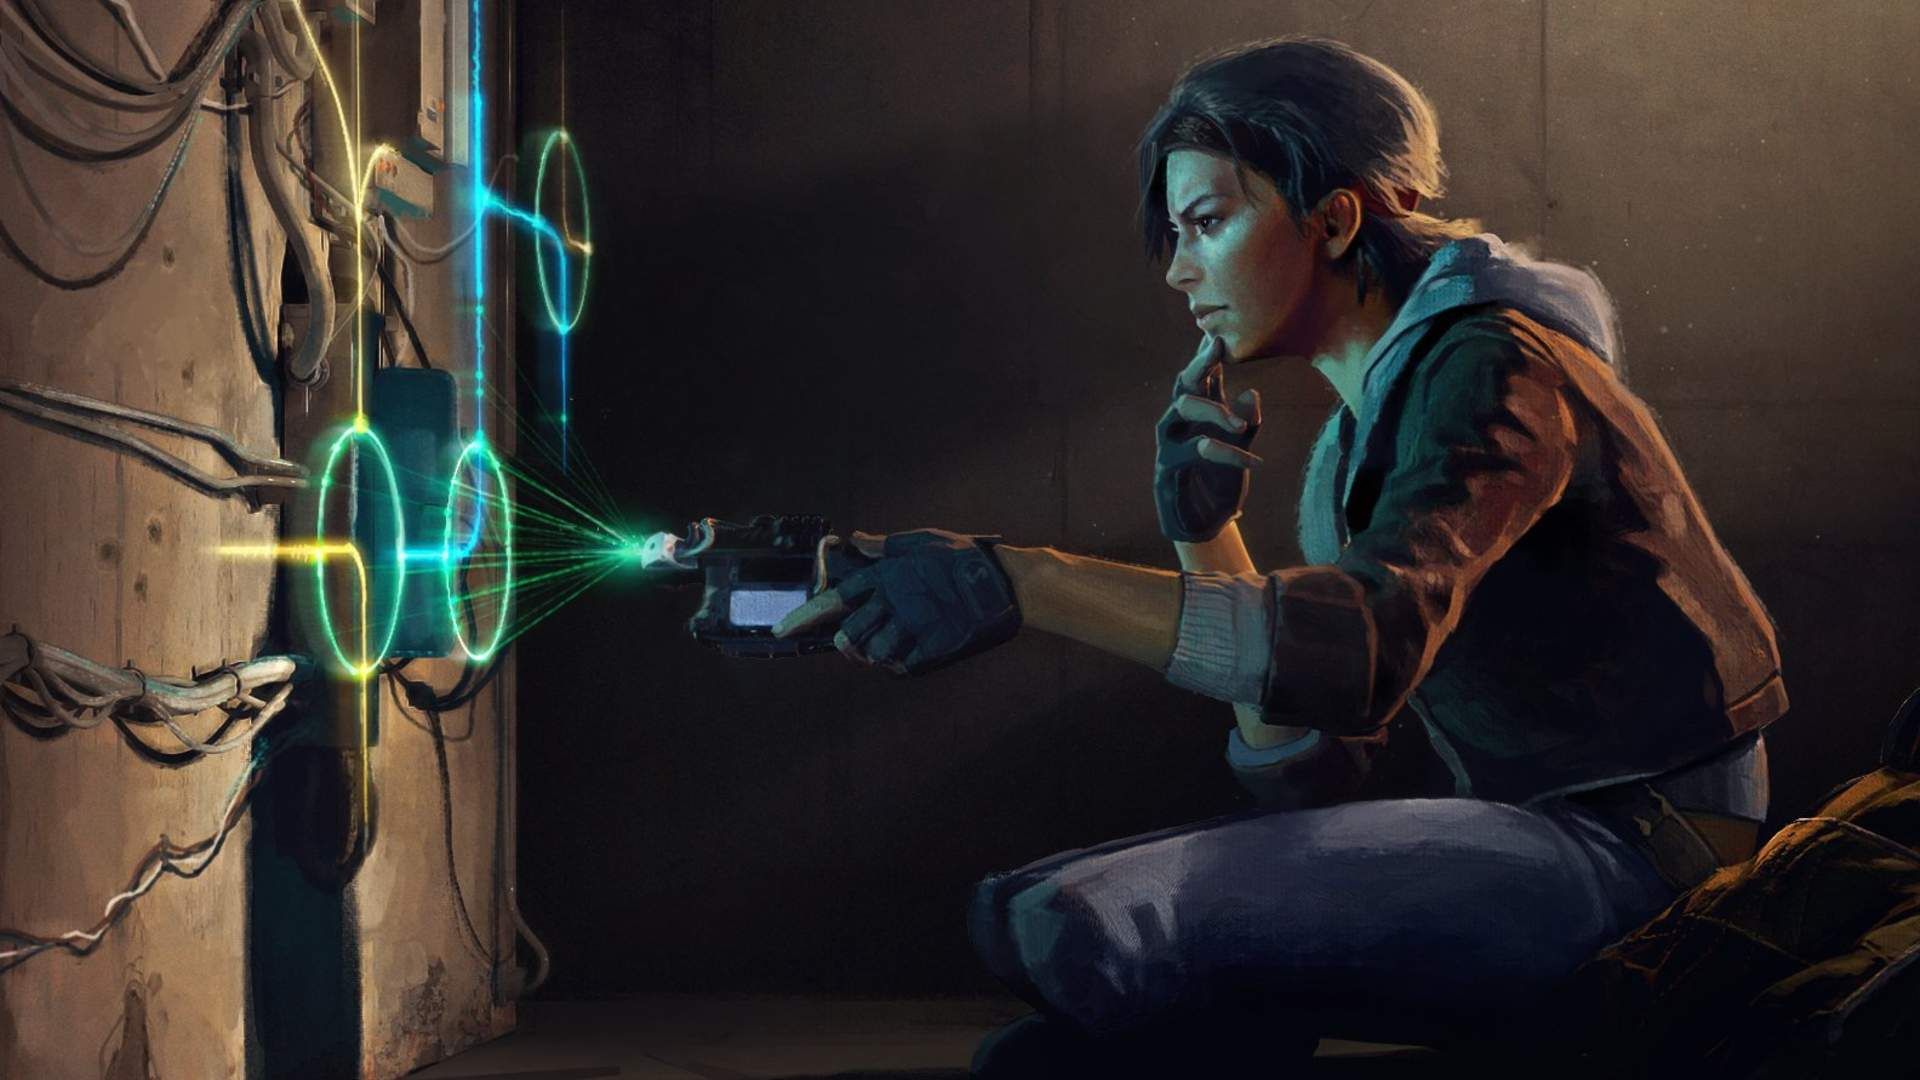 شخصیت الیکس در بازی Half Life Alyx مشغول کار با تکنولوژی های آینده نگرانه